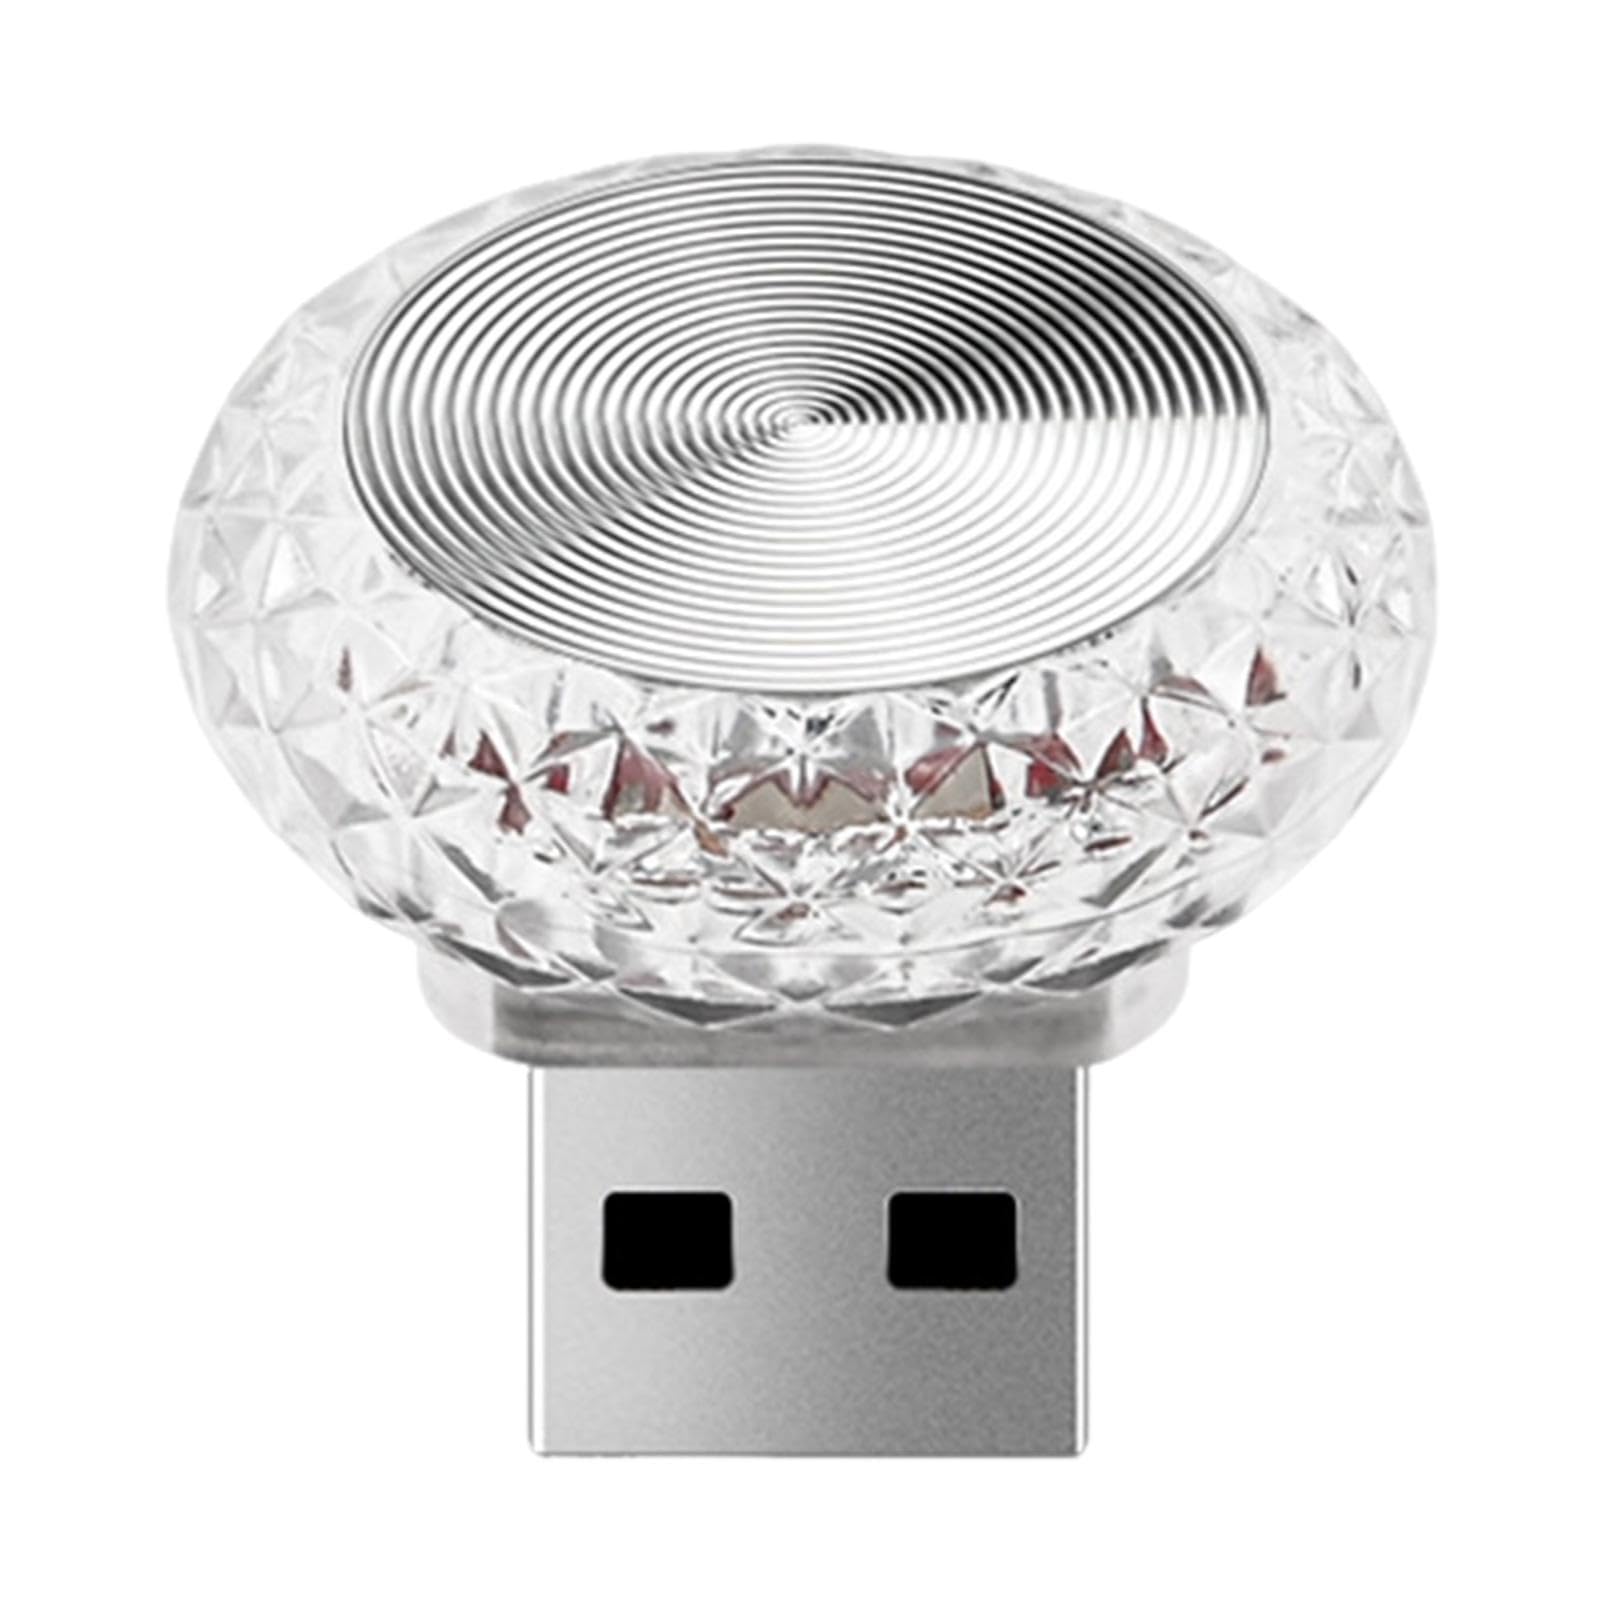 USB-LED-Auto-Innenatmosphärenlampe | LED Bunte Nachtdekoration Mini-USB-Licht - Ambientebeleuchtung LED-Leuchten Für Den Autoinnenraum von Fukamou